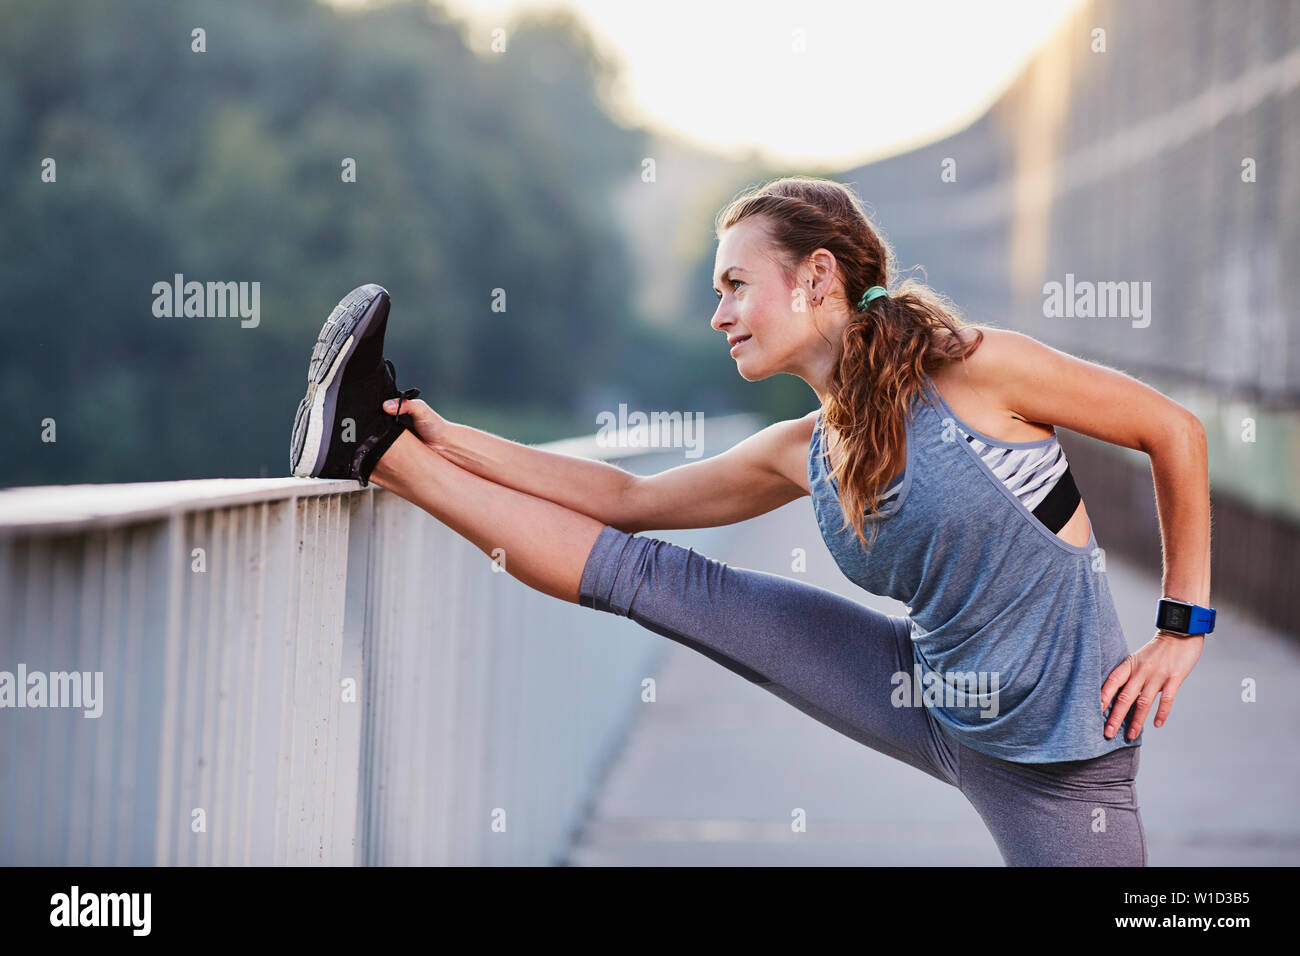 Atleta Femenina estirar las piernas después de ejecutar Foto de stock